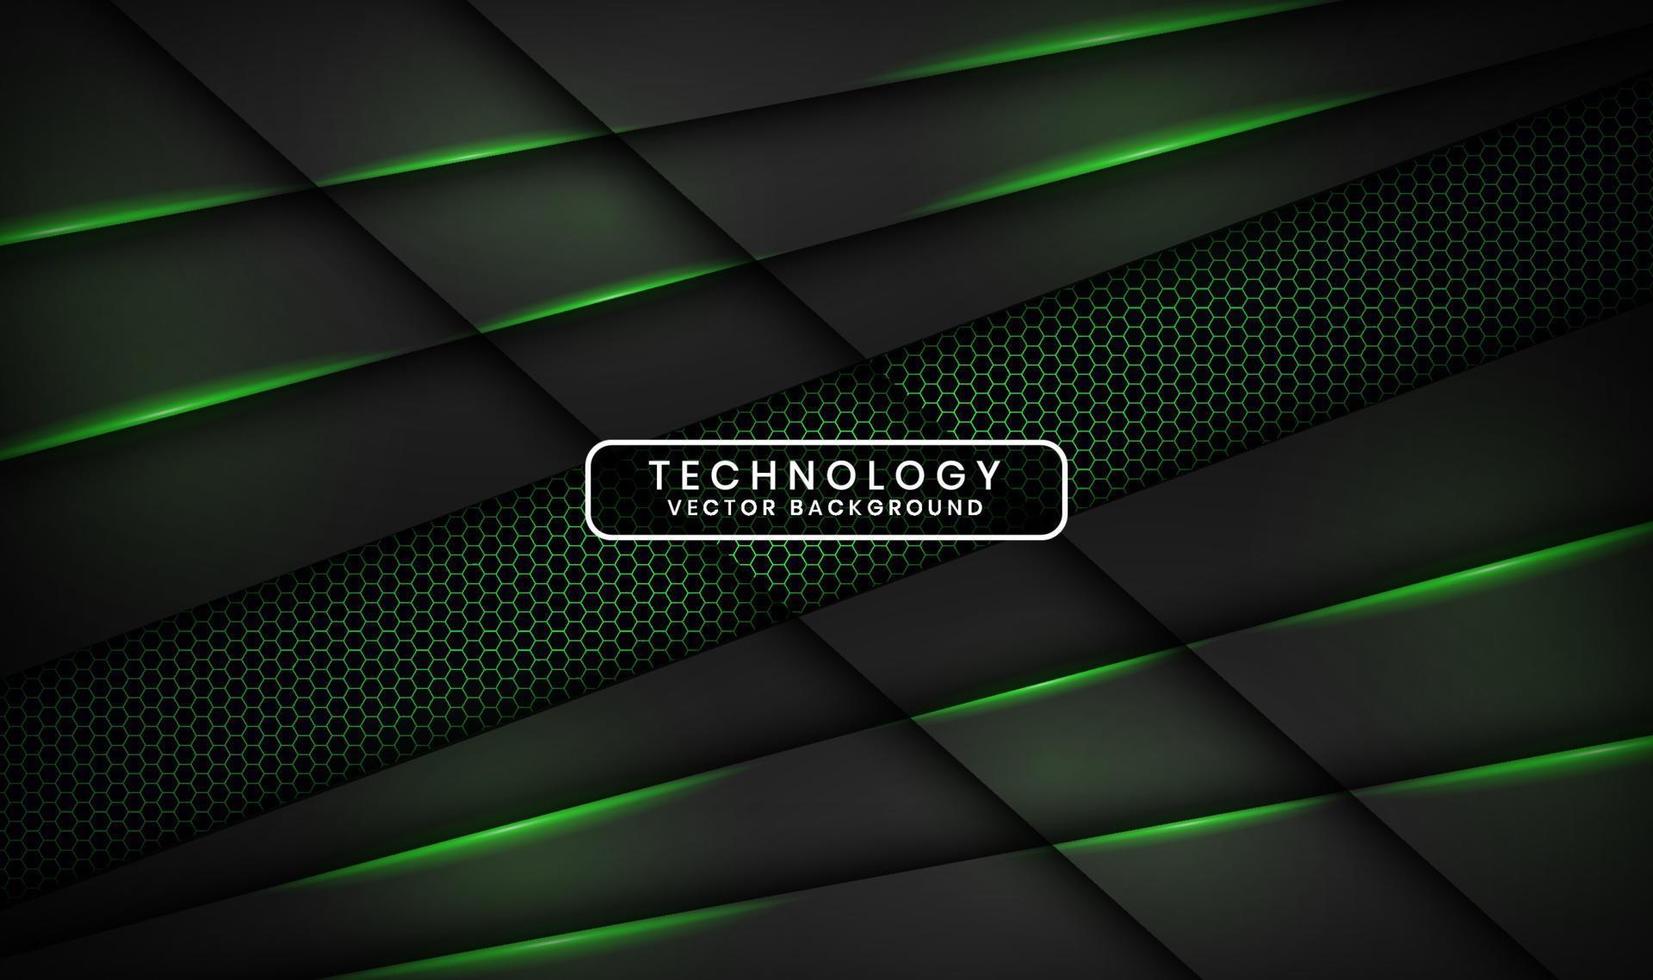 Capa de superposición de fondo abstracto de tecnología negra 3d en espacio oscuro con decoración de efecto de luz verde. elemento de diseño gráfico concepto de estilo futuro para banner, volante, portada de folleto o página de inicio vector